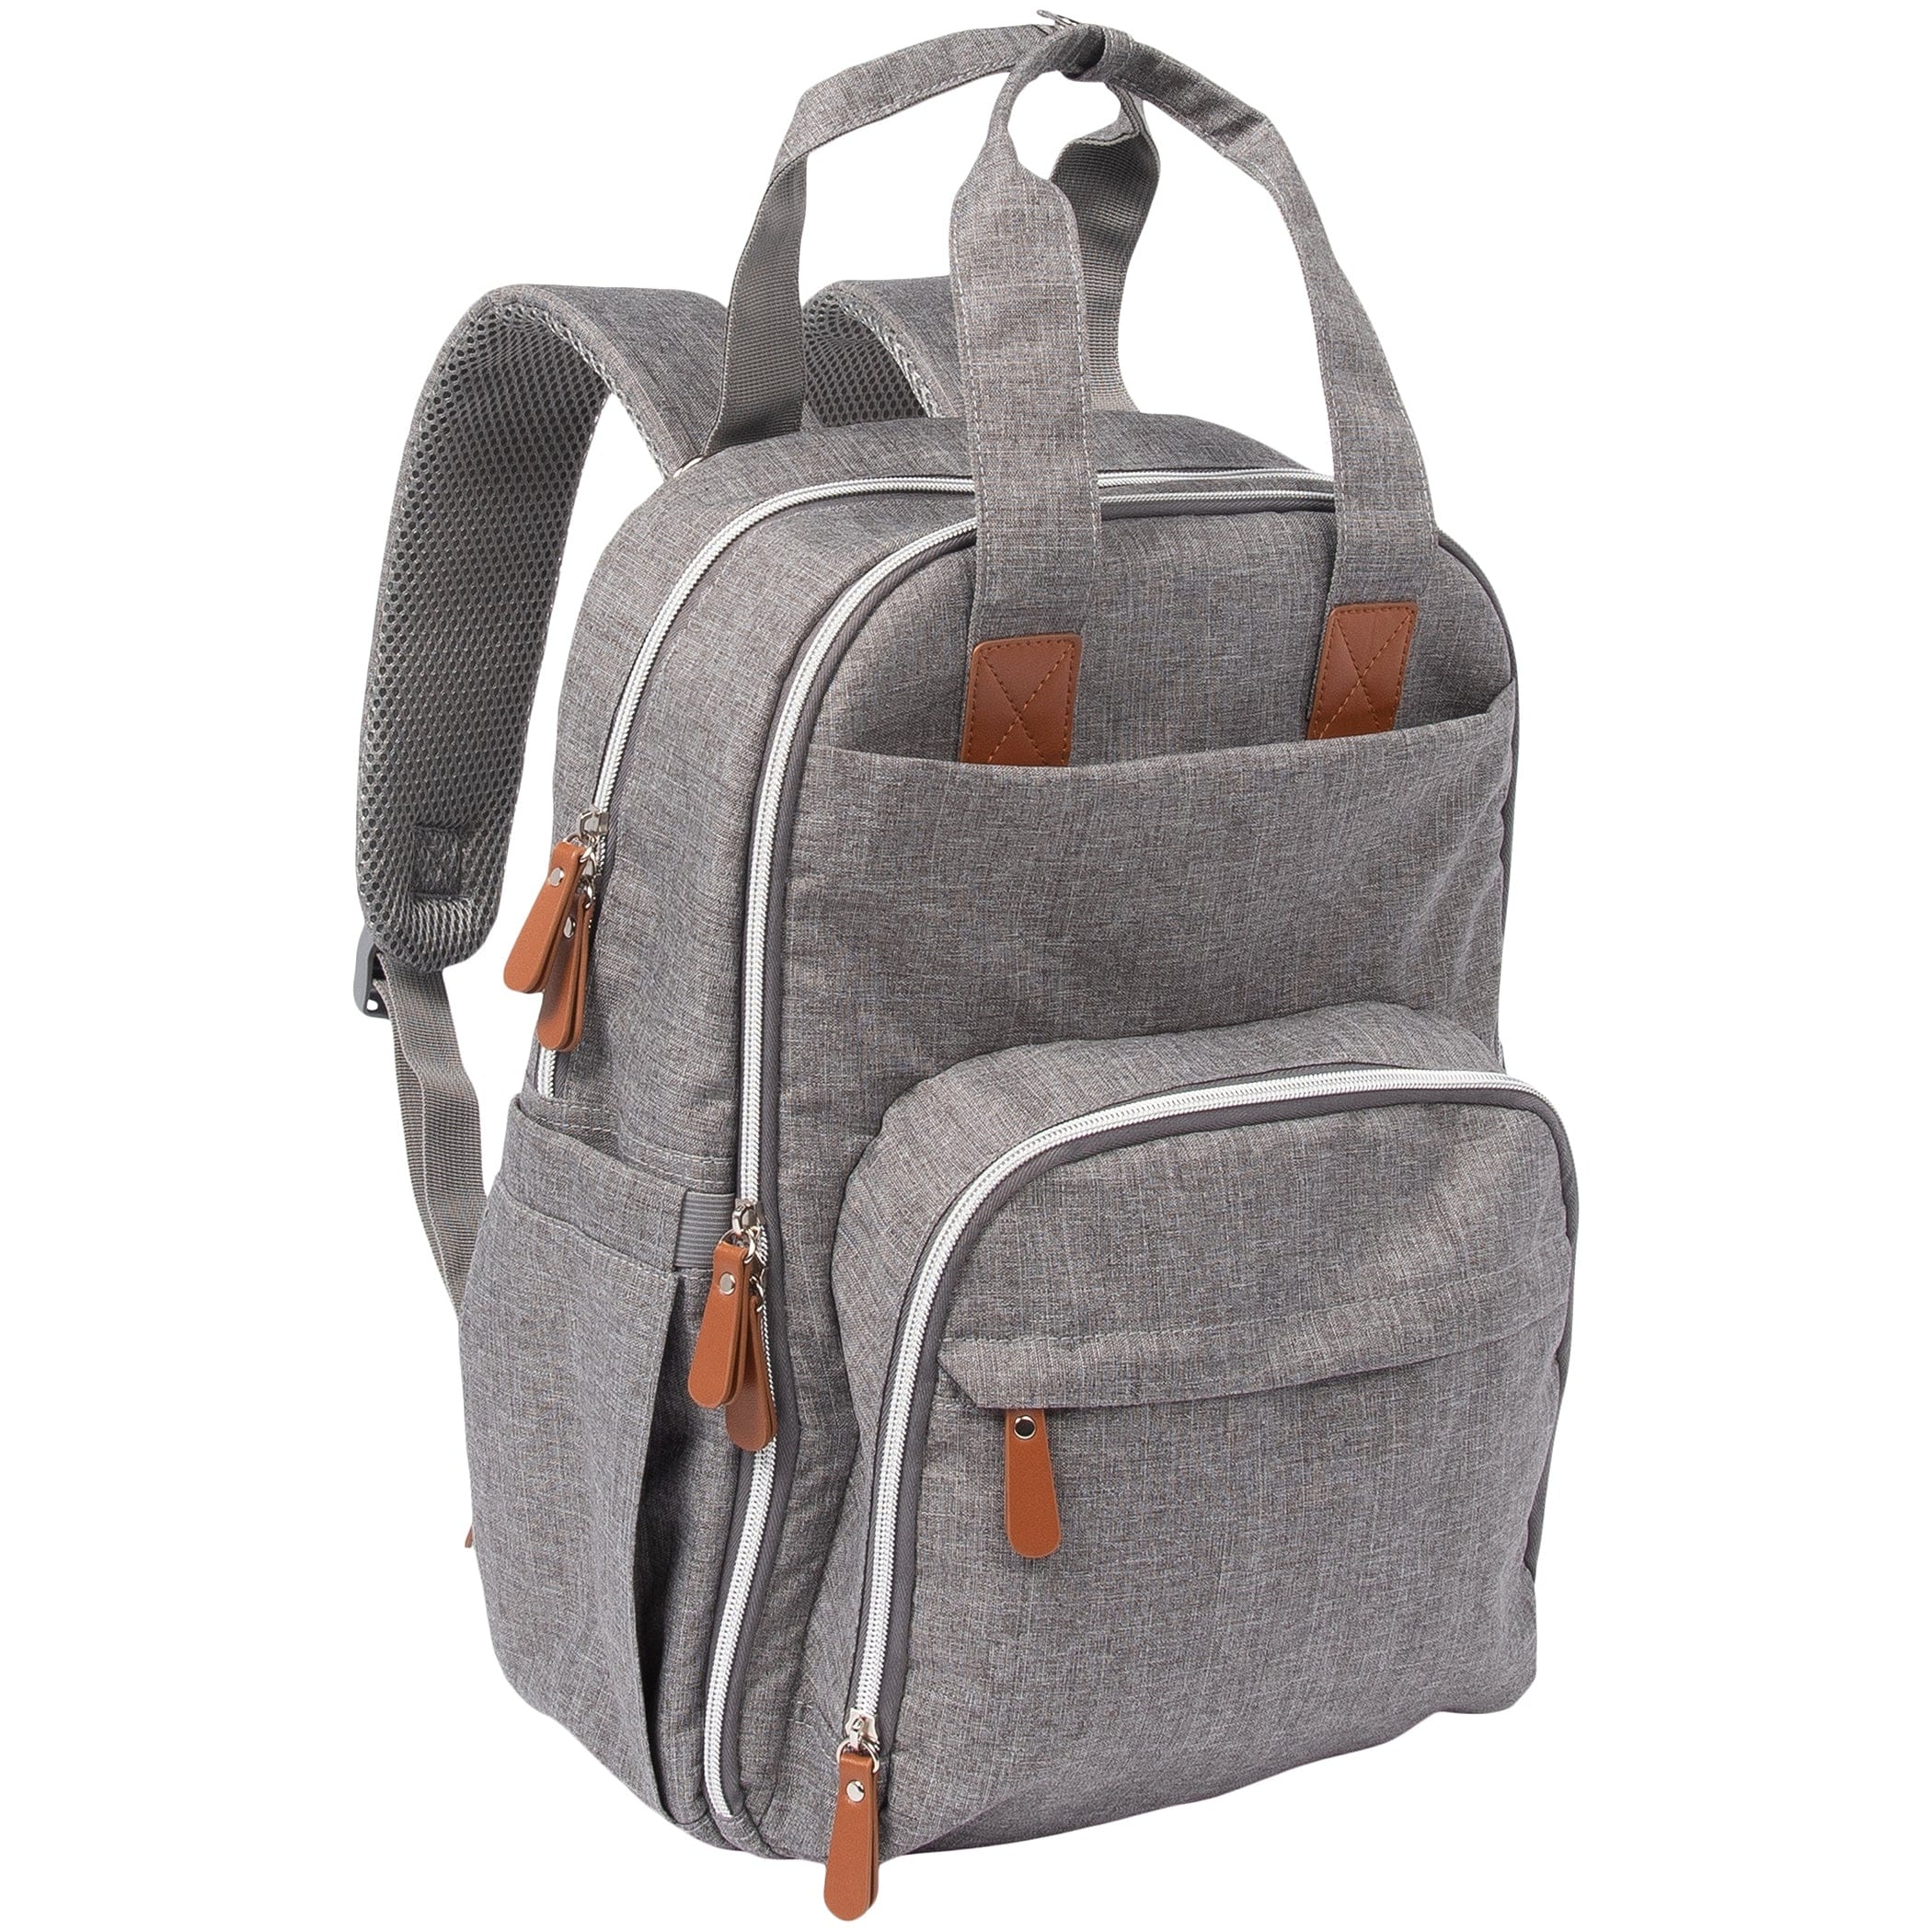 Backpack Diaper Bag - Gray